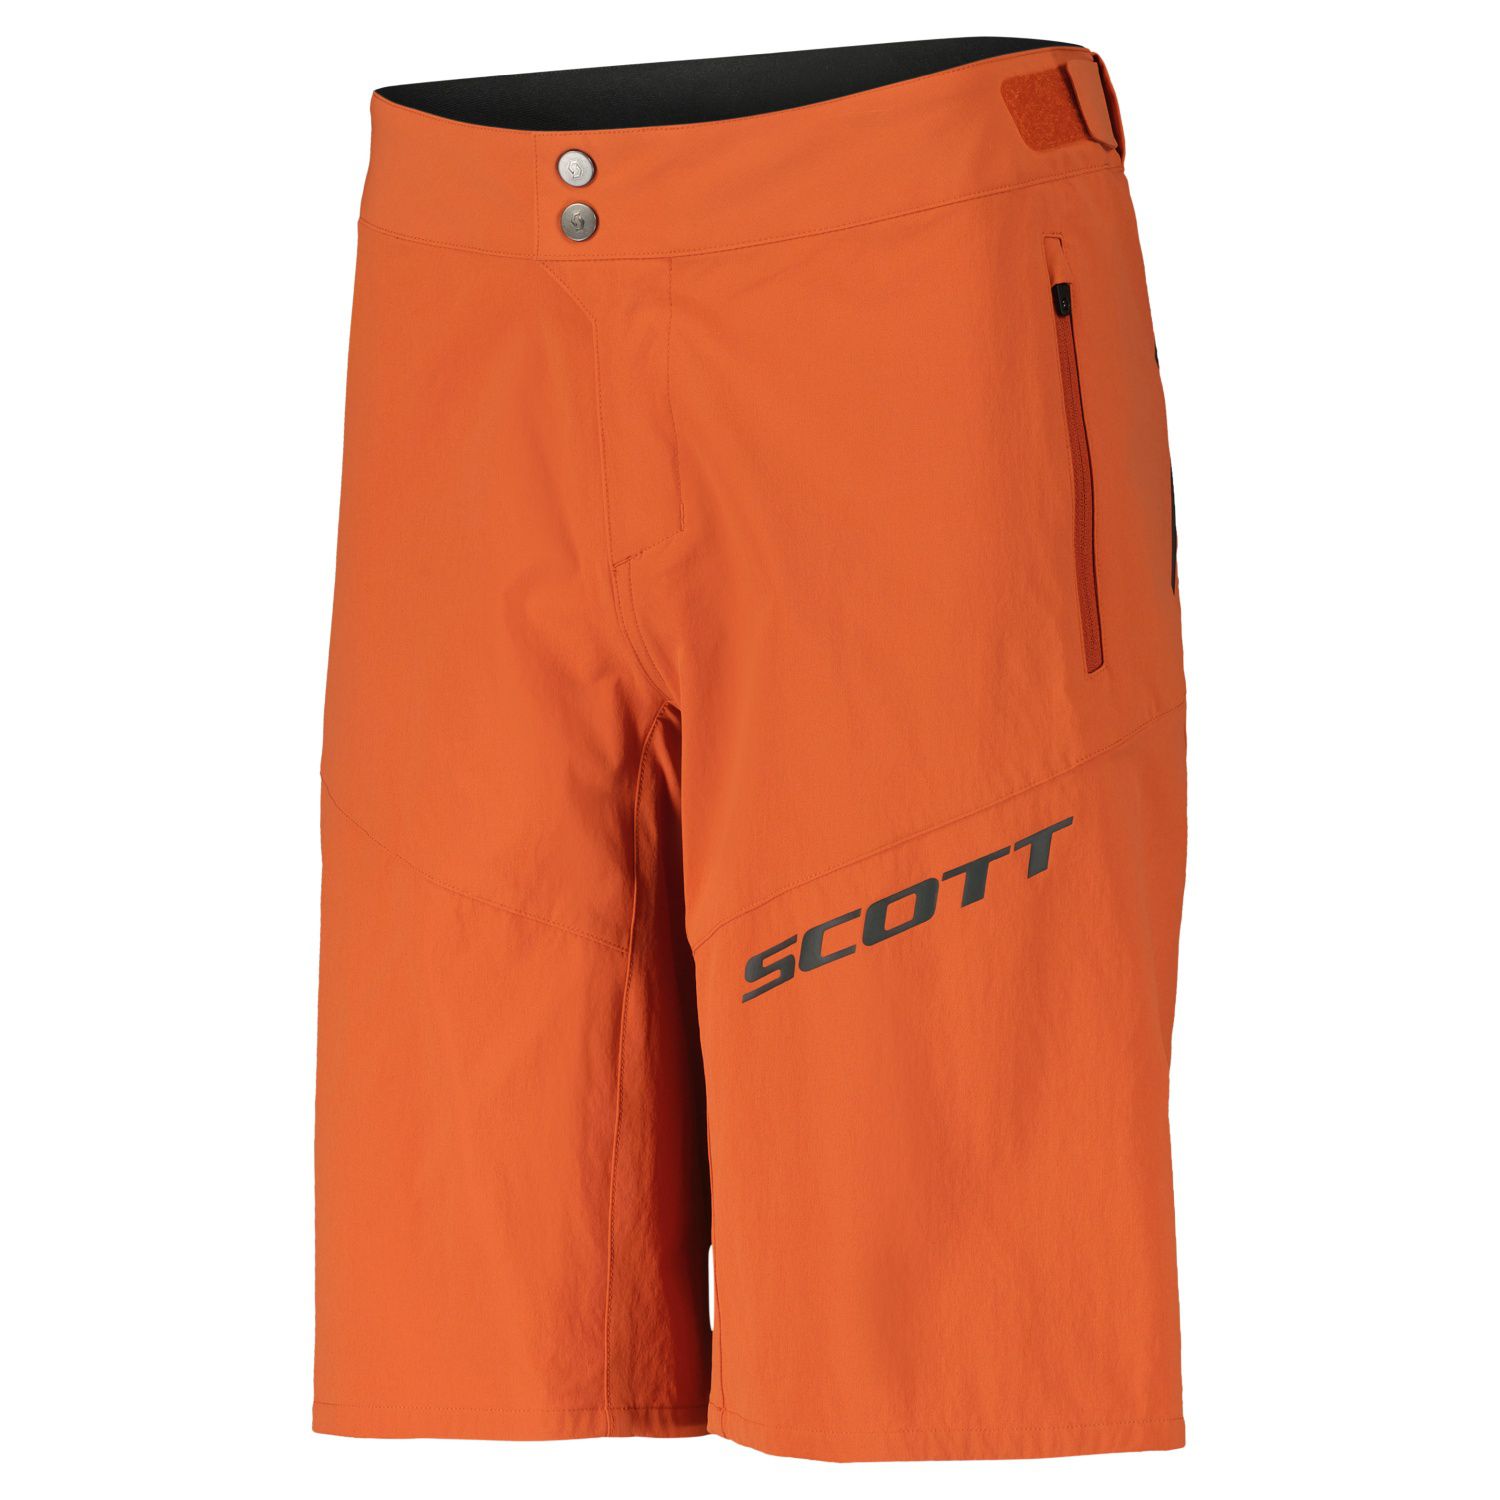 Culotte Scott Ms Endurance Ls/fit Con Badana - naranja - 